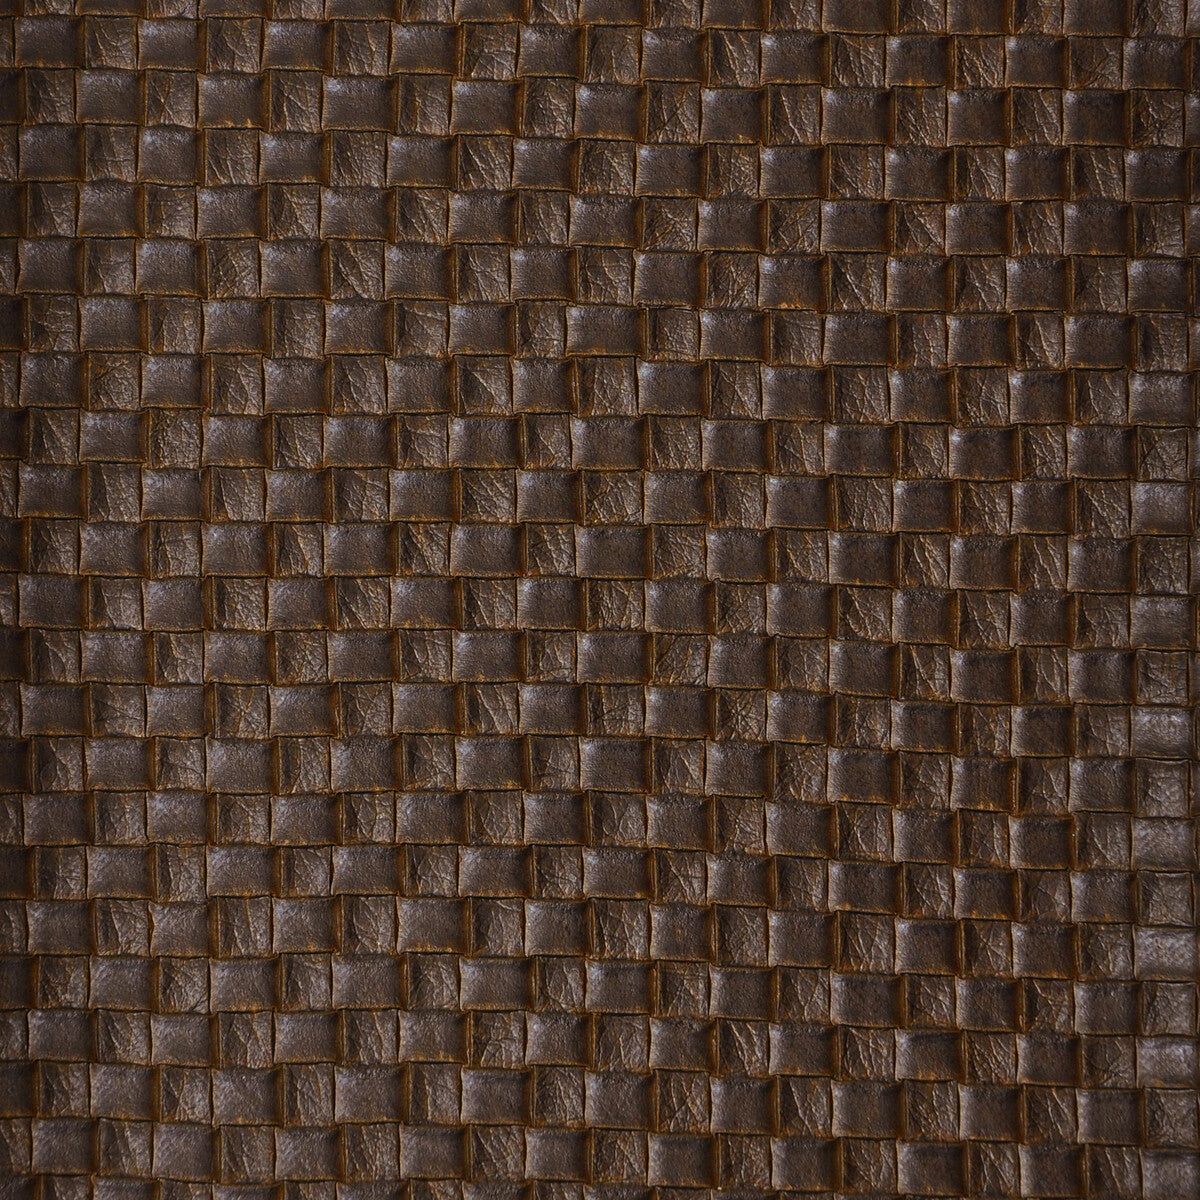 Kravet Design fabric in olia-6 color - pattern OLIA.6.0 - by Kravet Design